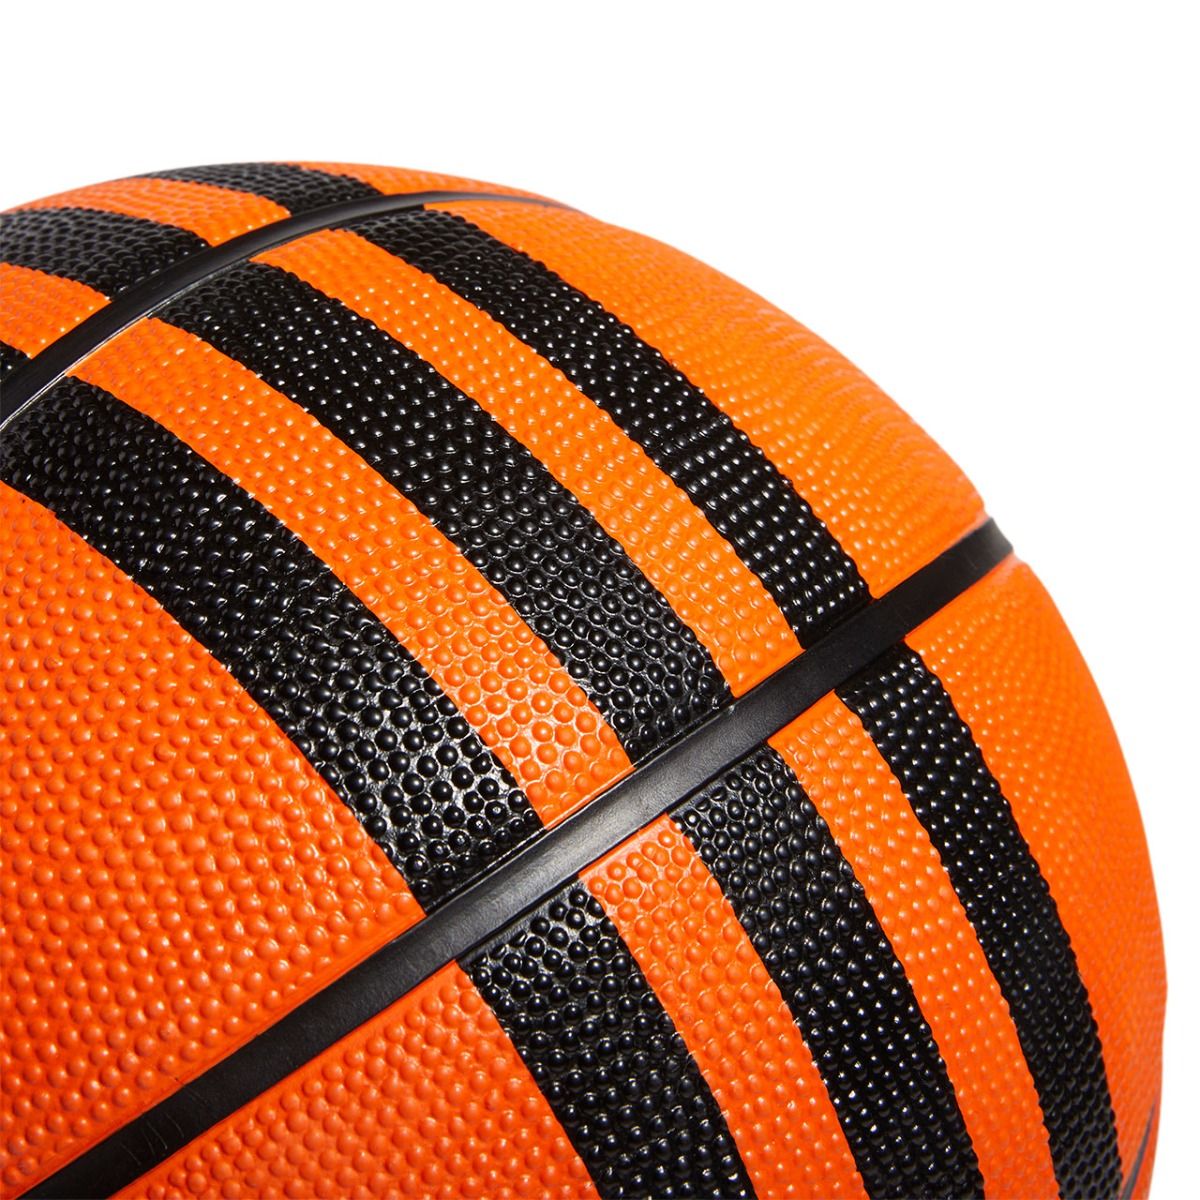 adidas Basketbalový míč  3-Stripes Rubber X3 HM4970